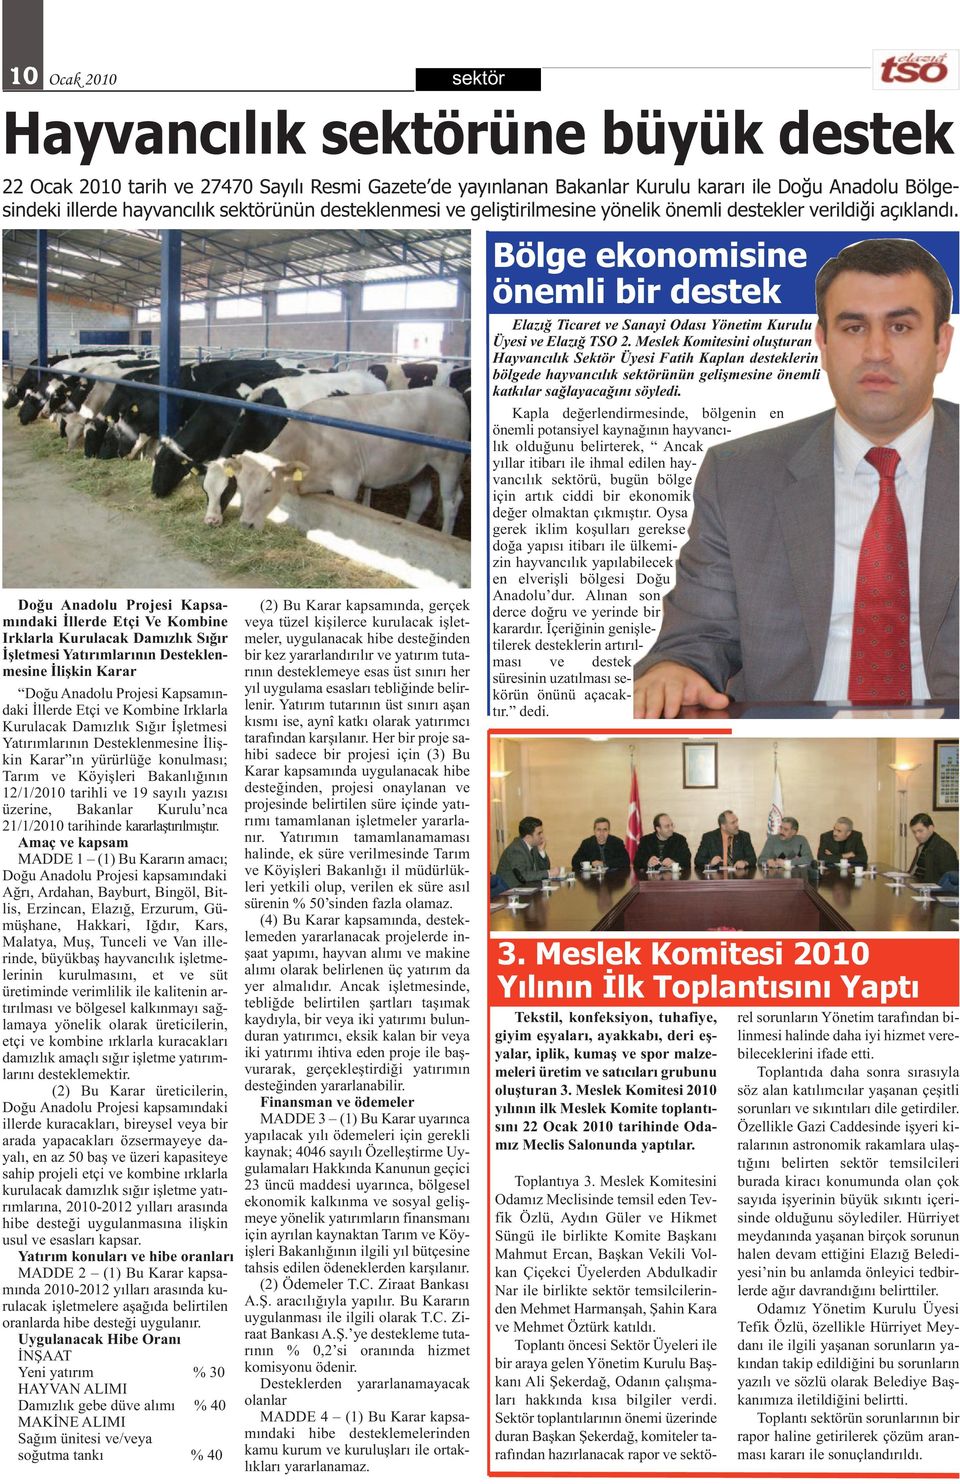 Doğu Anadolu Projesi Kapsamındaki İllerde Etçi Ve Kombine Irklarla Kurulacak Damızlık Sığır İşletmesi Yatırımlarının Desteklenmesine İlişkin Karar Doğu Anadolu Projesi Kapsamındaki İllerde Etçi ve